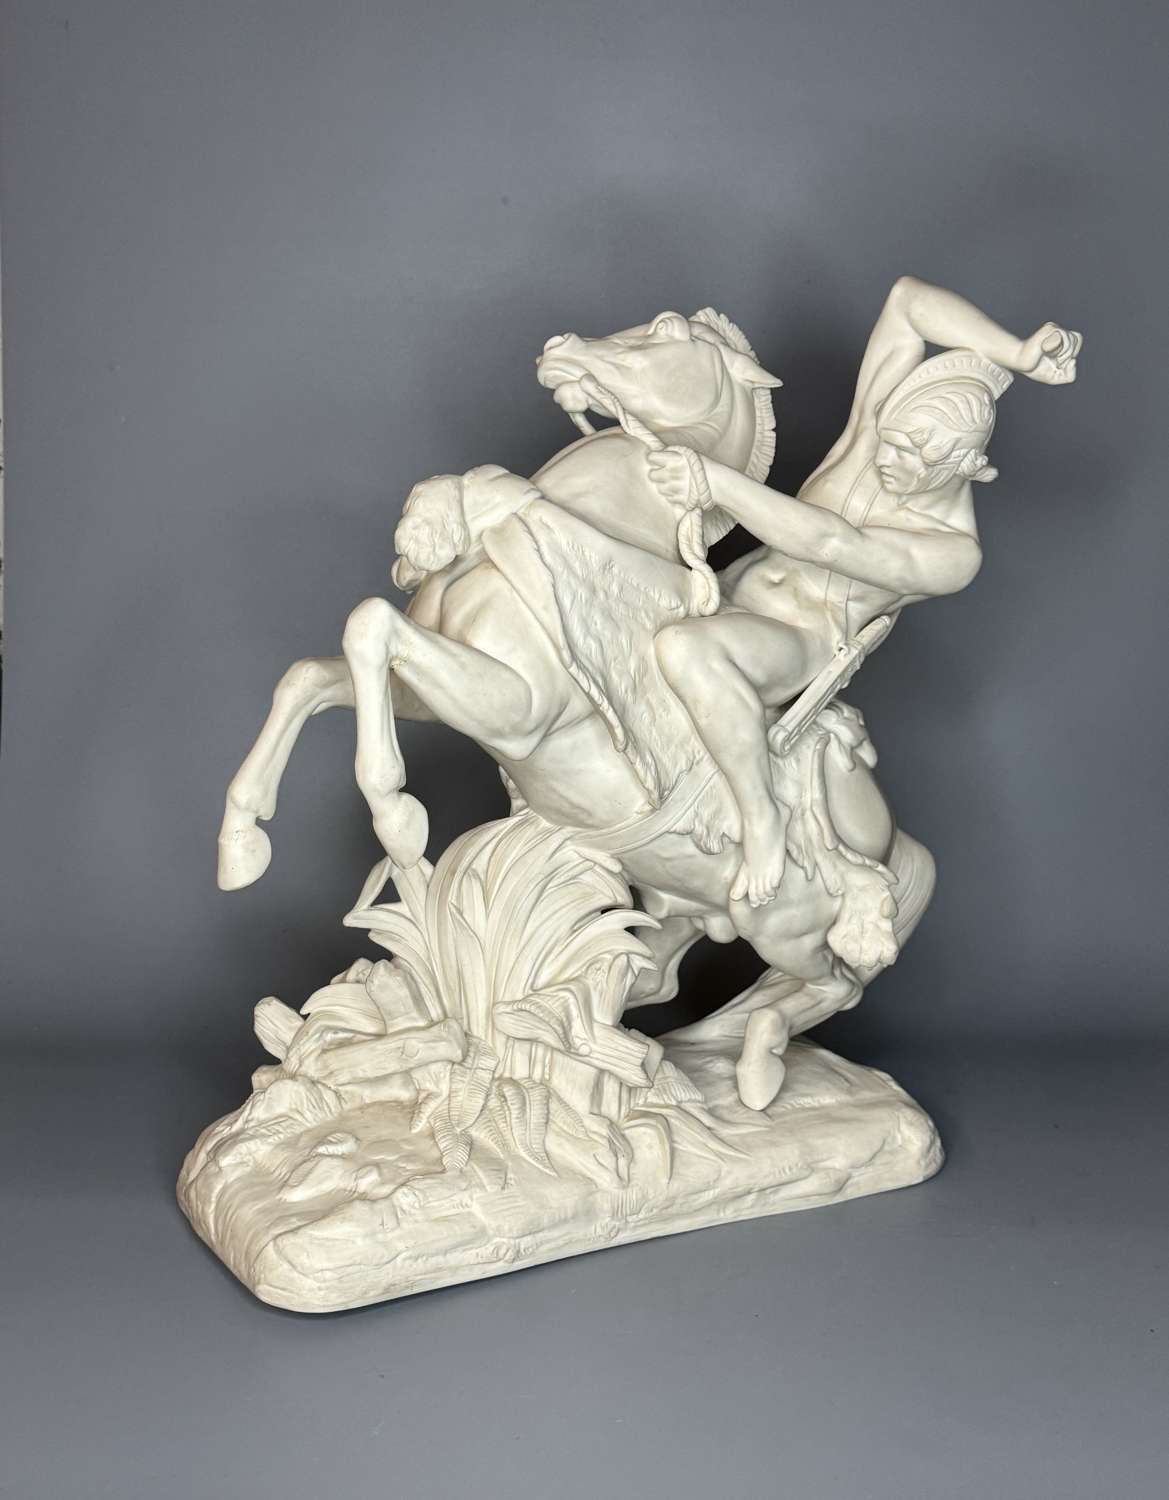 Minton Parian Figure of Theseus modelled by A. Carrier-Belleuse